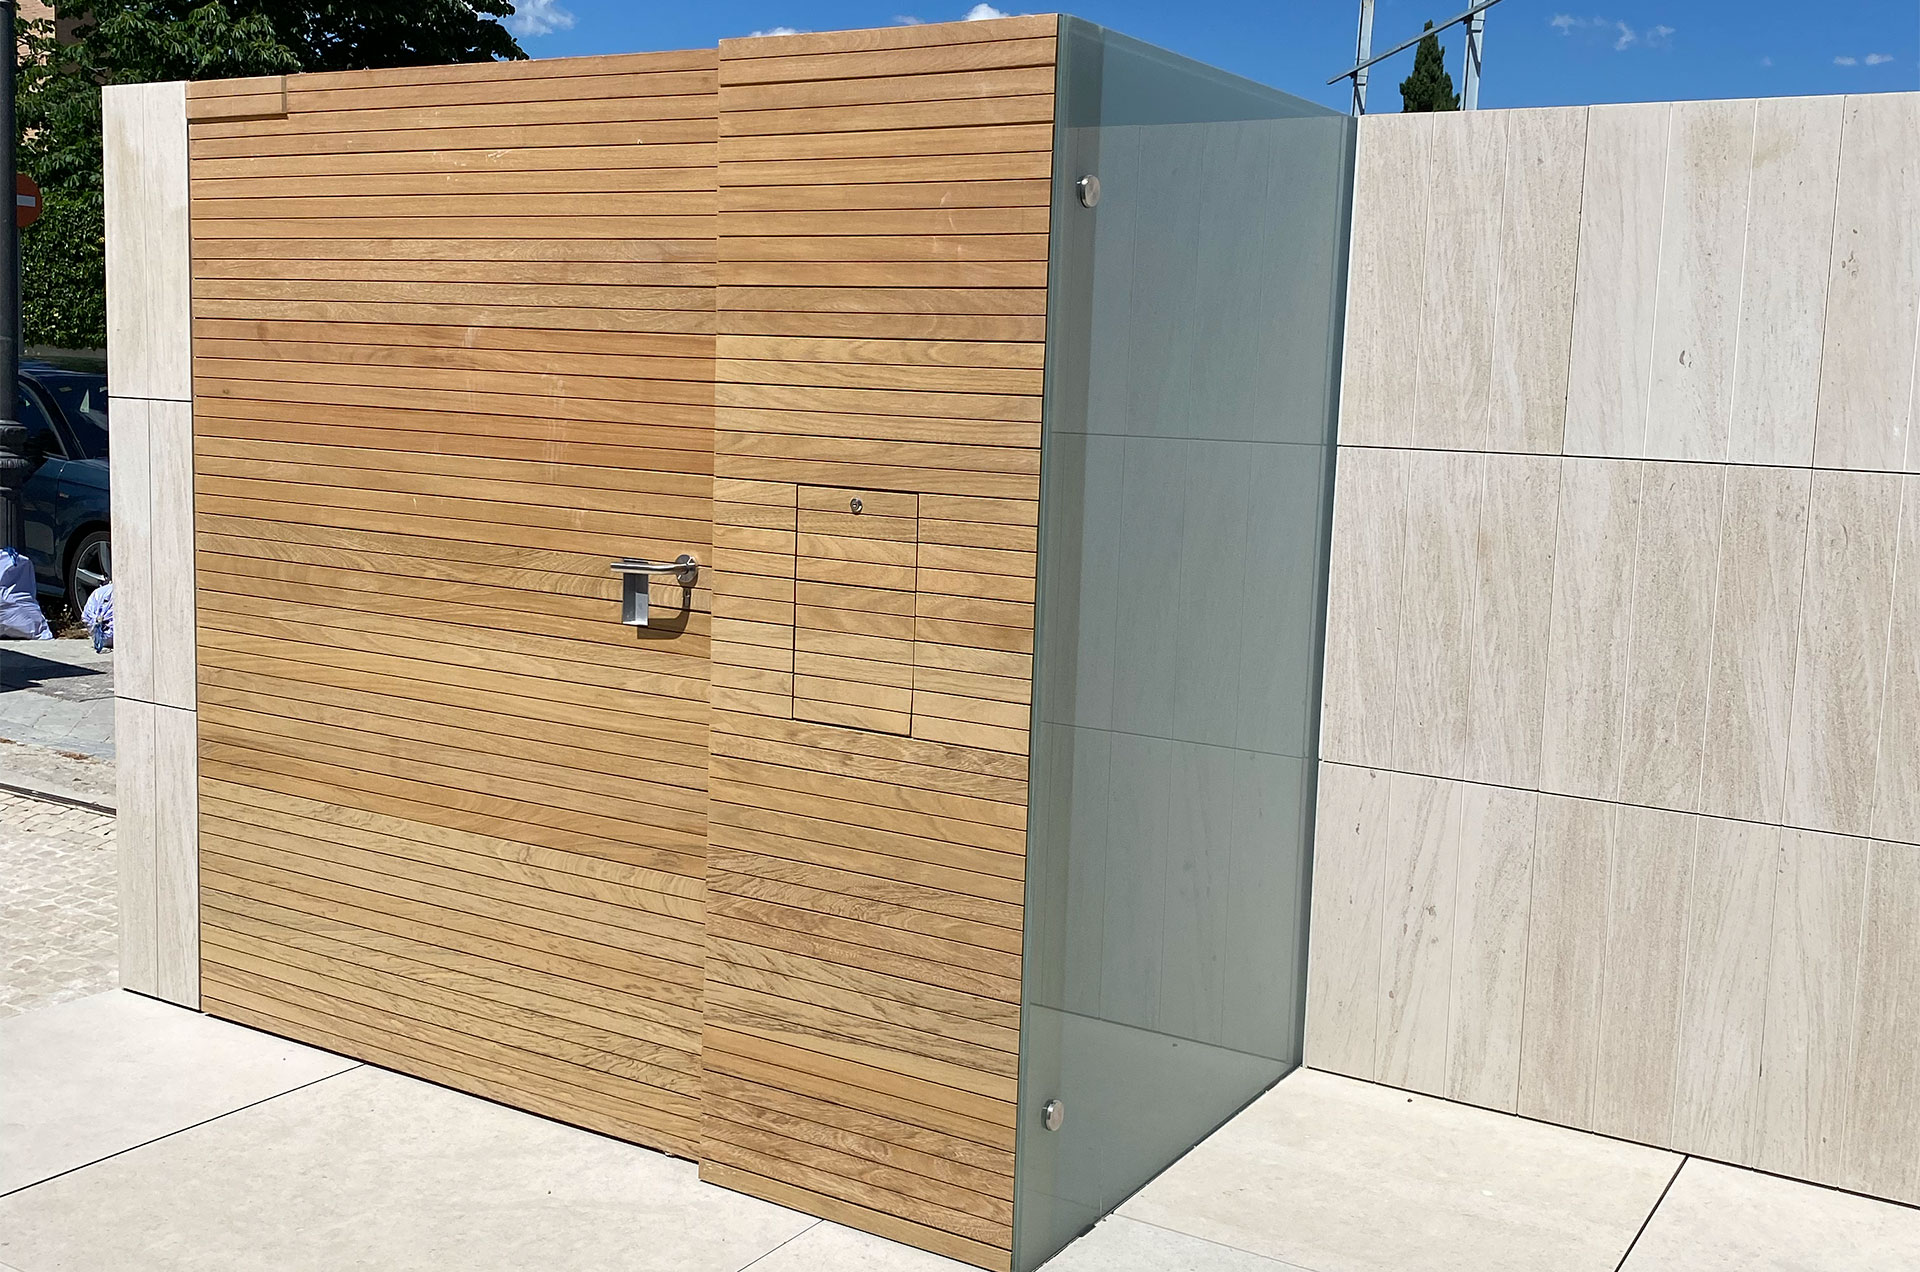 Puerta exterior de acceso a vivienda forrada en madera